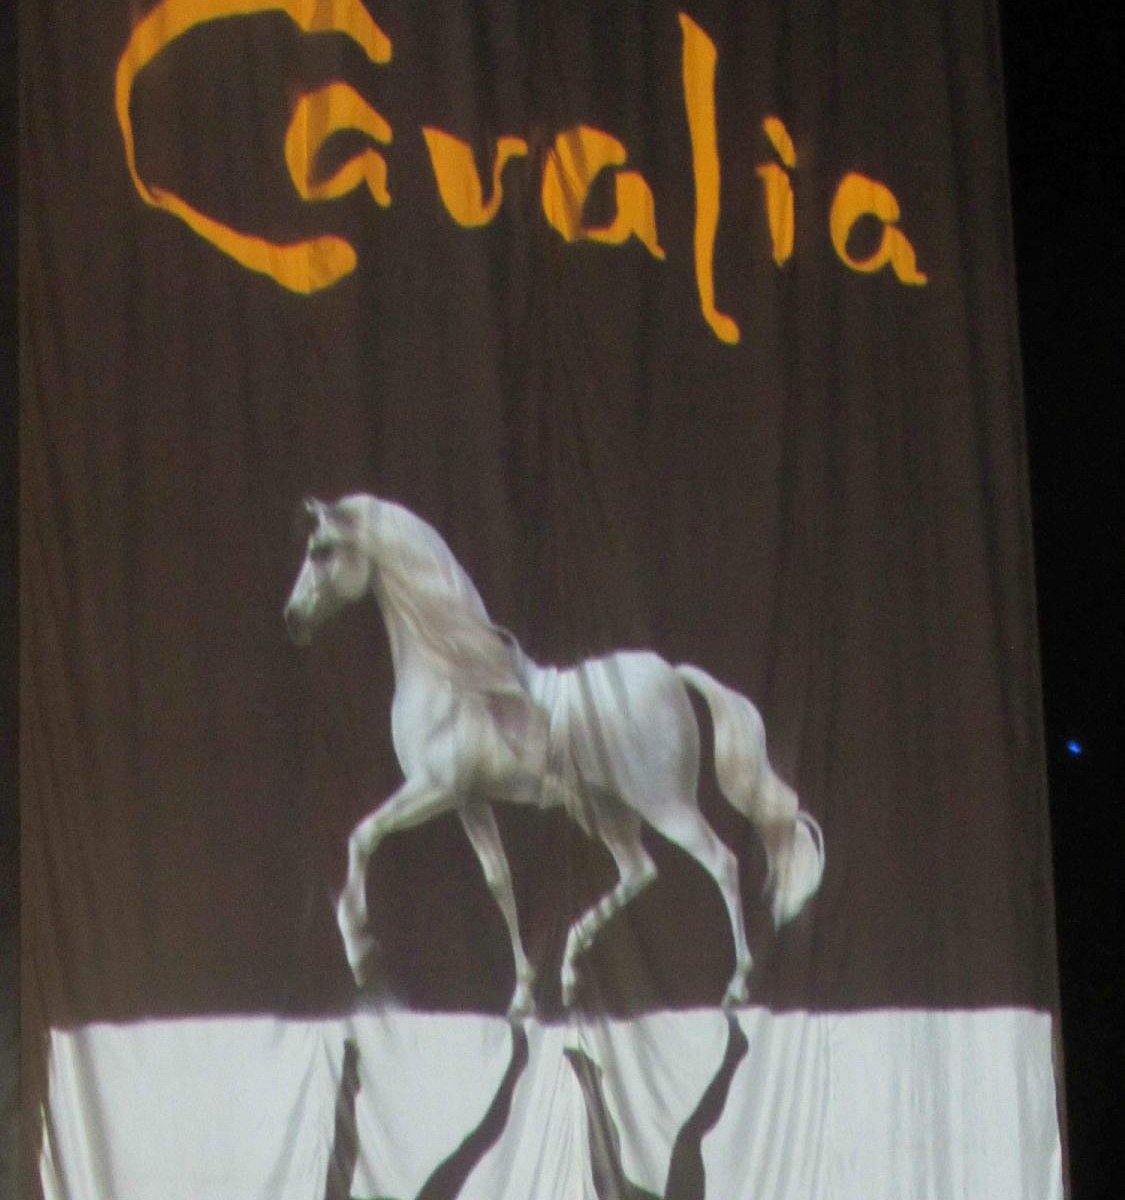 cavalia tour dates 2022